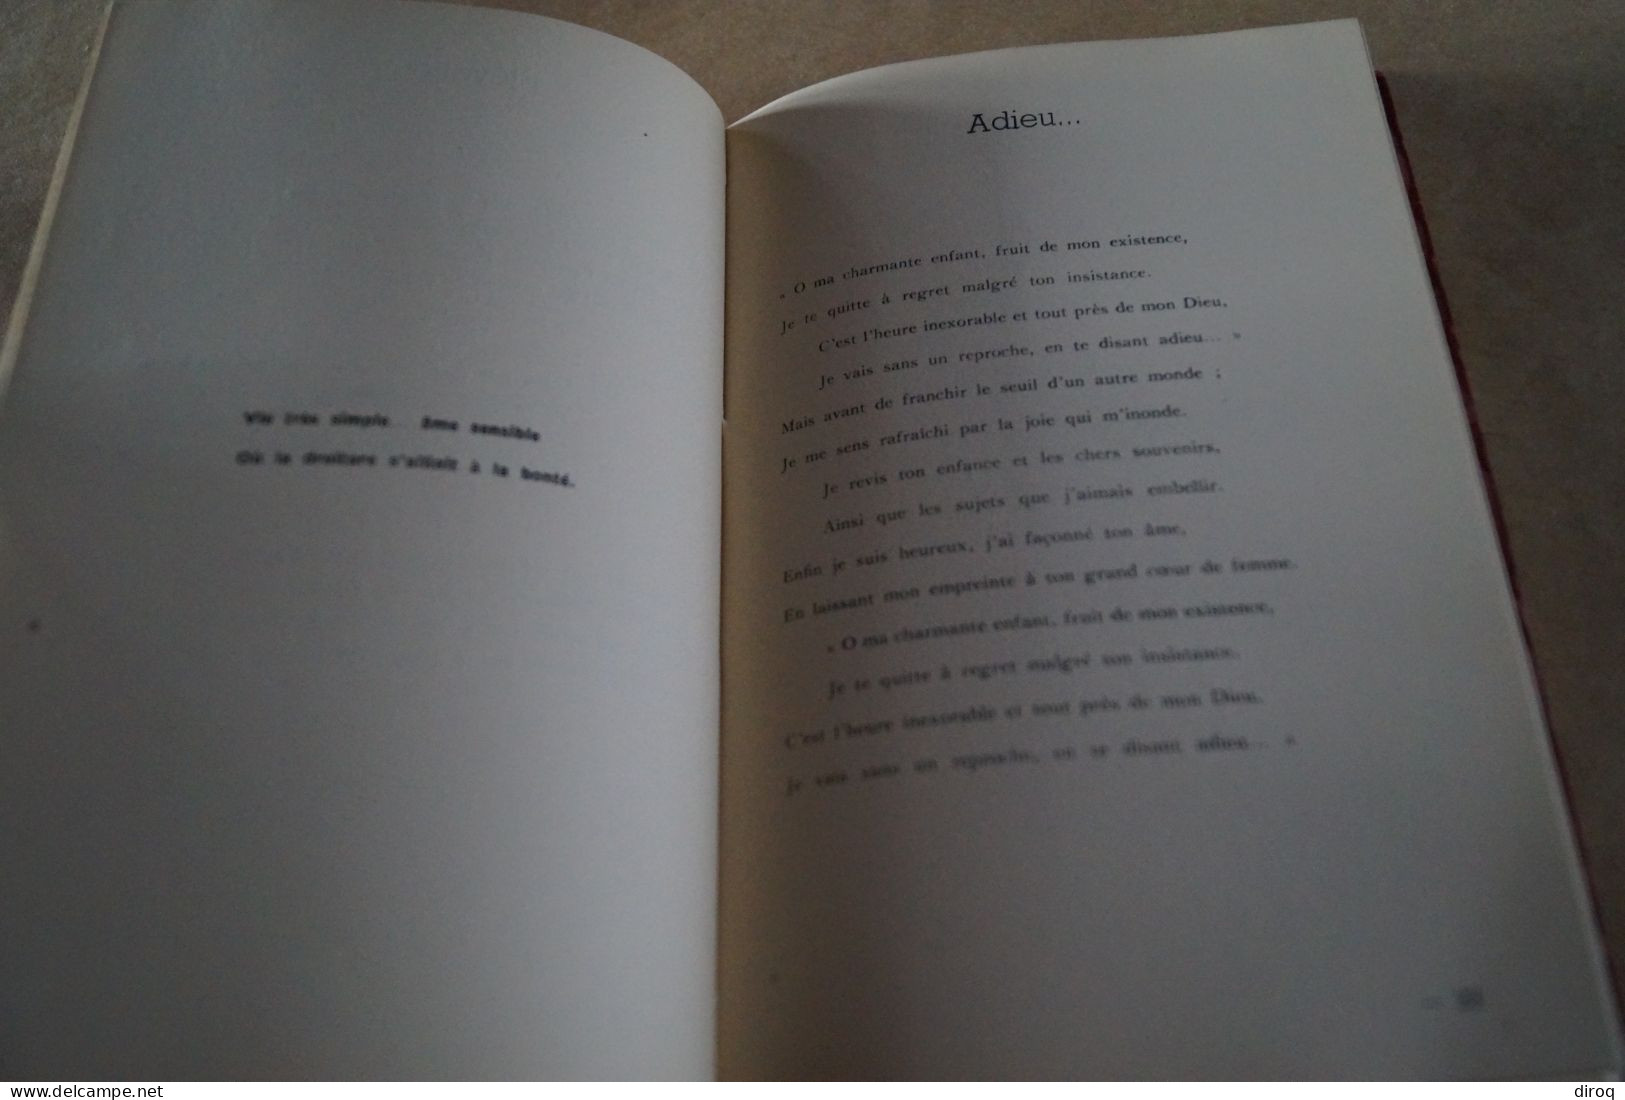 Georges Michaux,En Sourdine,poèmes 1946,dédicacé,51 pages,21,5 Cm. sur 14 Cm. très bel état